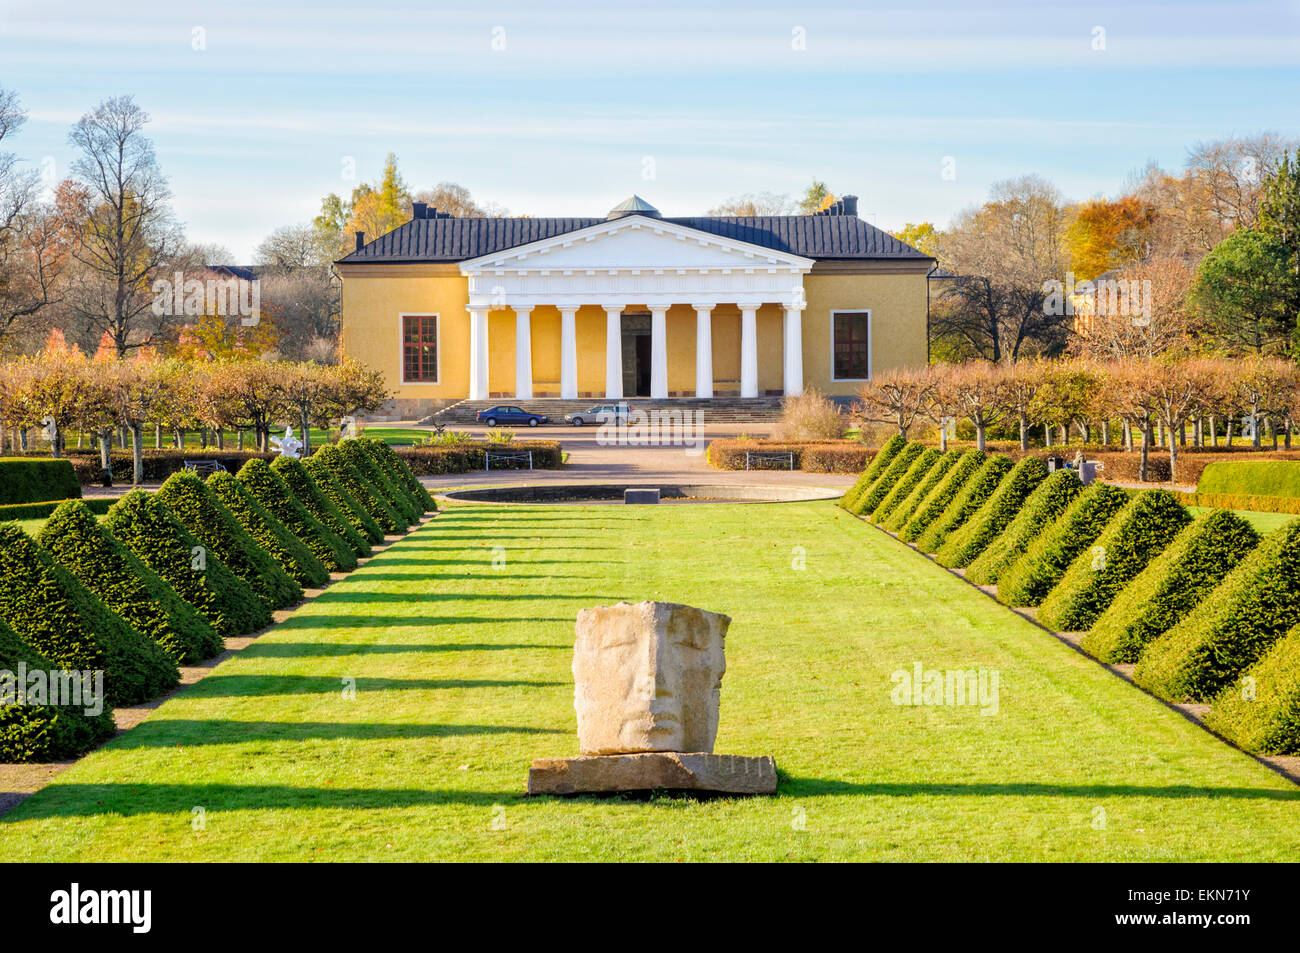 Jardin Botanique d'Uppsala, connue aussi comme la méthode linnéenne jardin après Carolus Linnaeus (aka Carl Linnaeus). Jardins botaniques jardin botanique linnéenne Banque D'Images